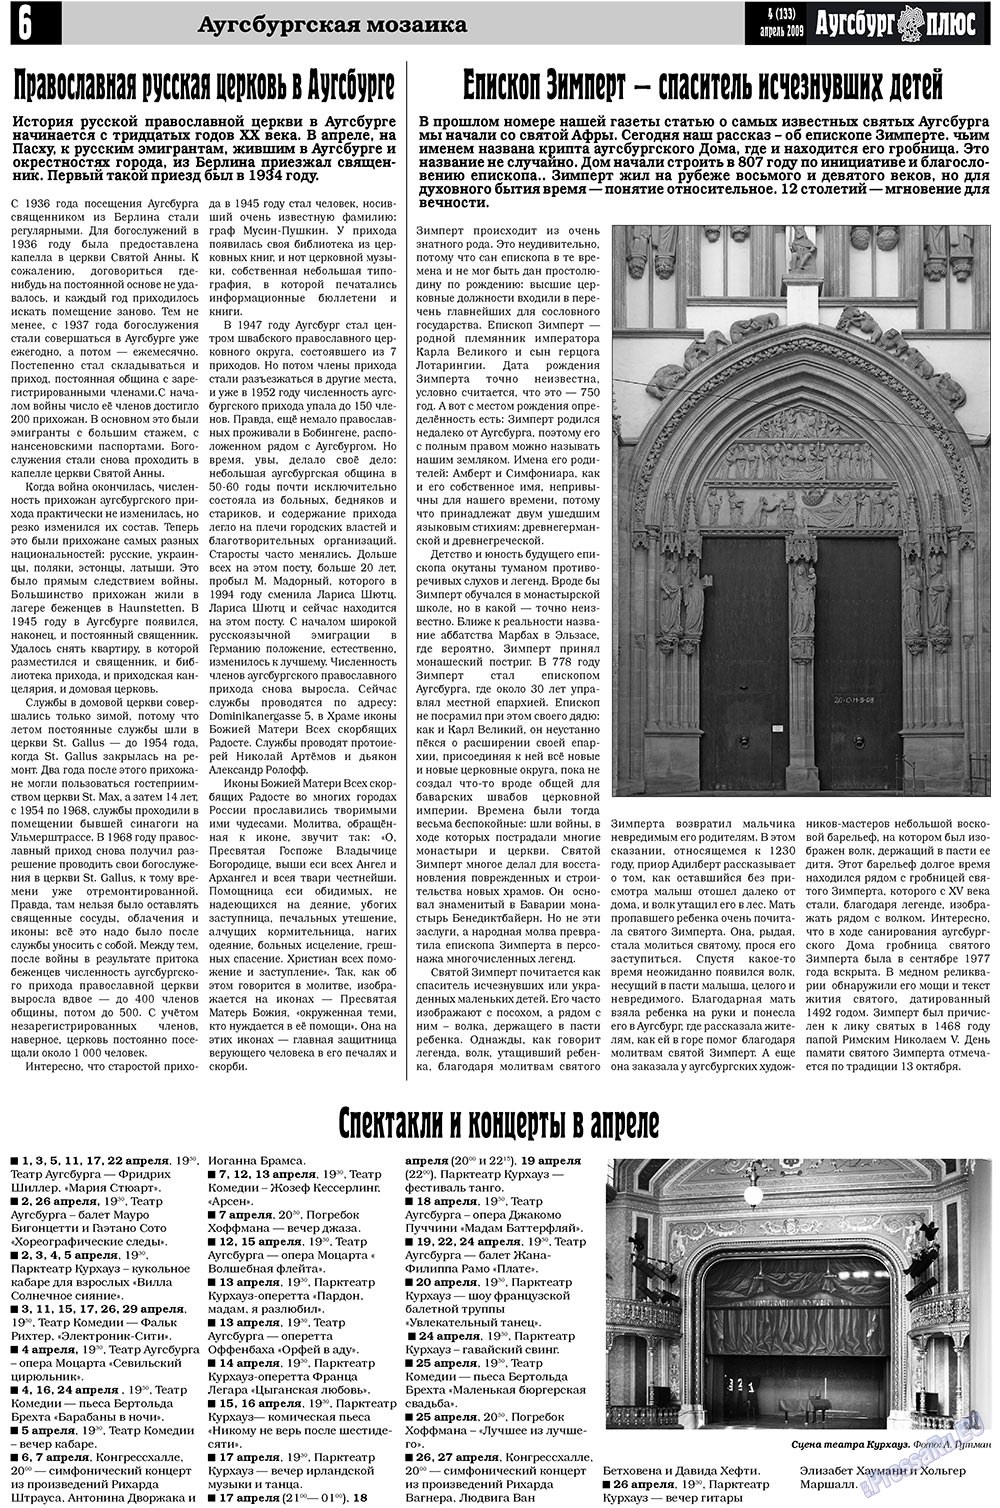 Германия плюс (газета). 2009 год, номер 4, стр. 8